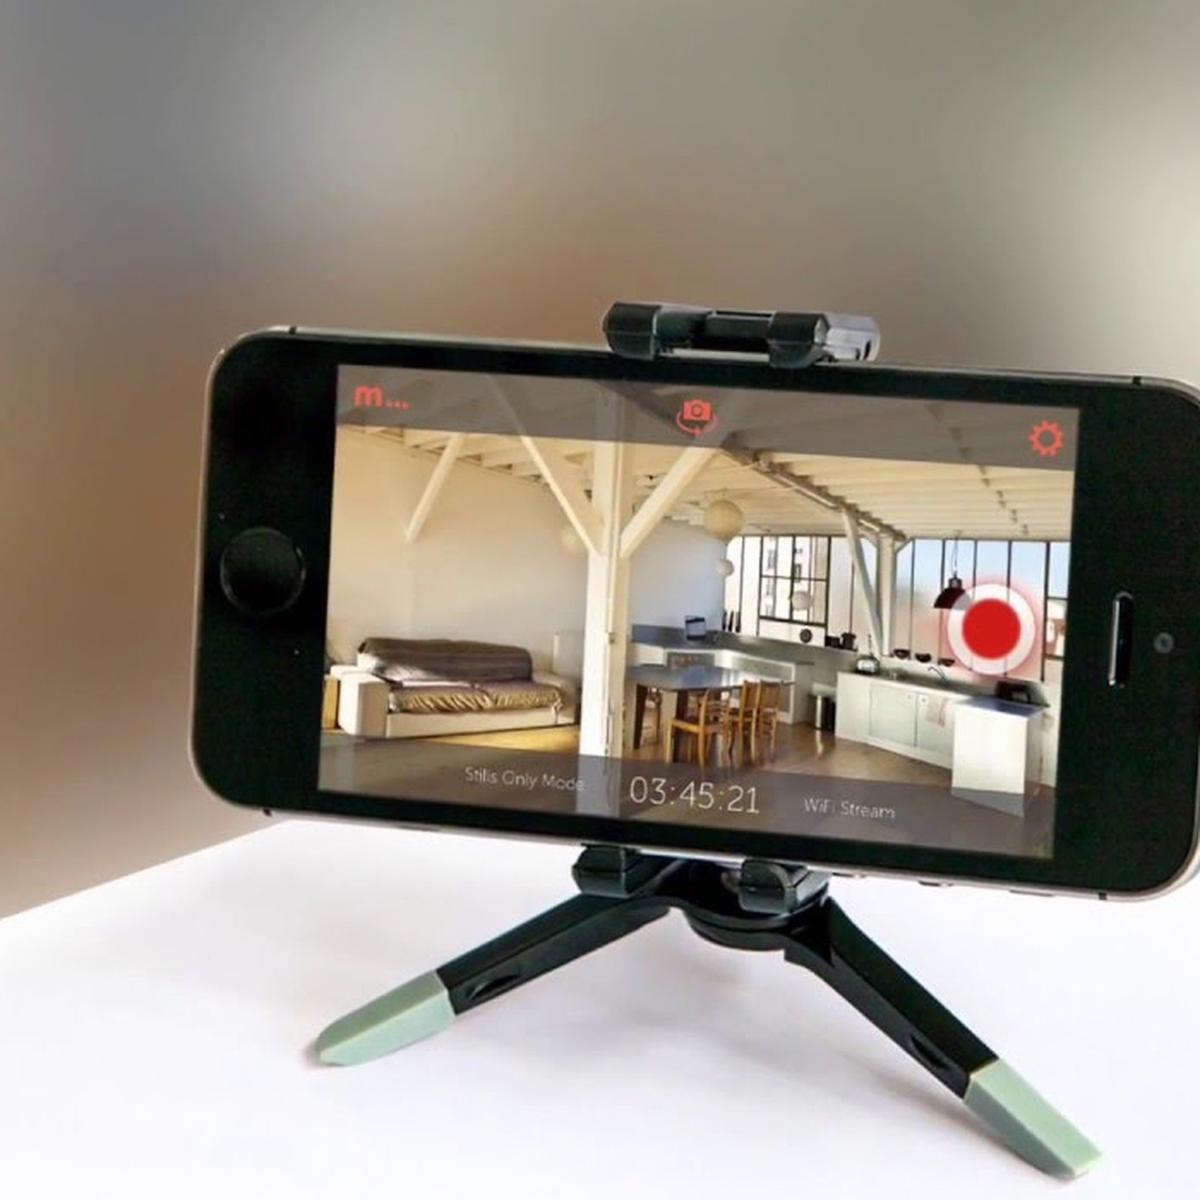 Zoom | cómo utilizar tu como cámara web | how can I use my smartphone in a webcam | Estados Unidos | | | Perú | iPhone | Android